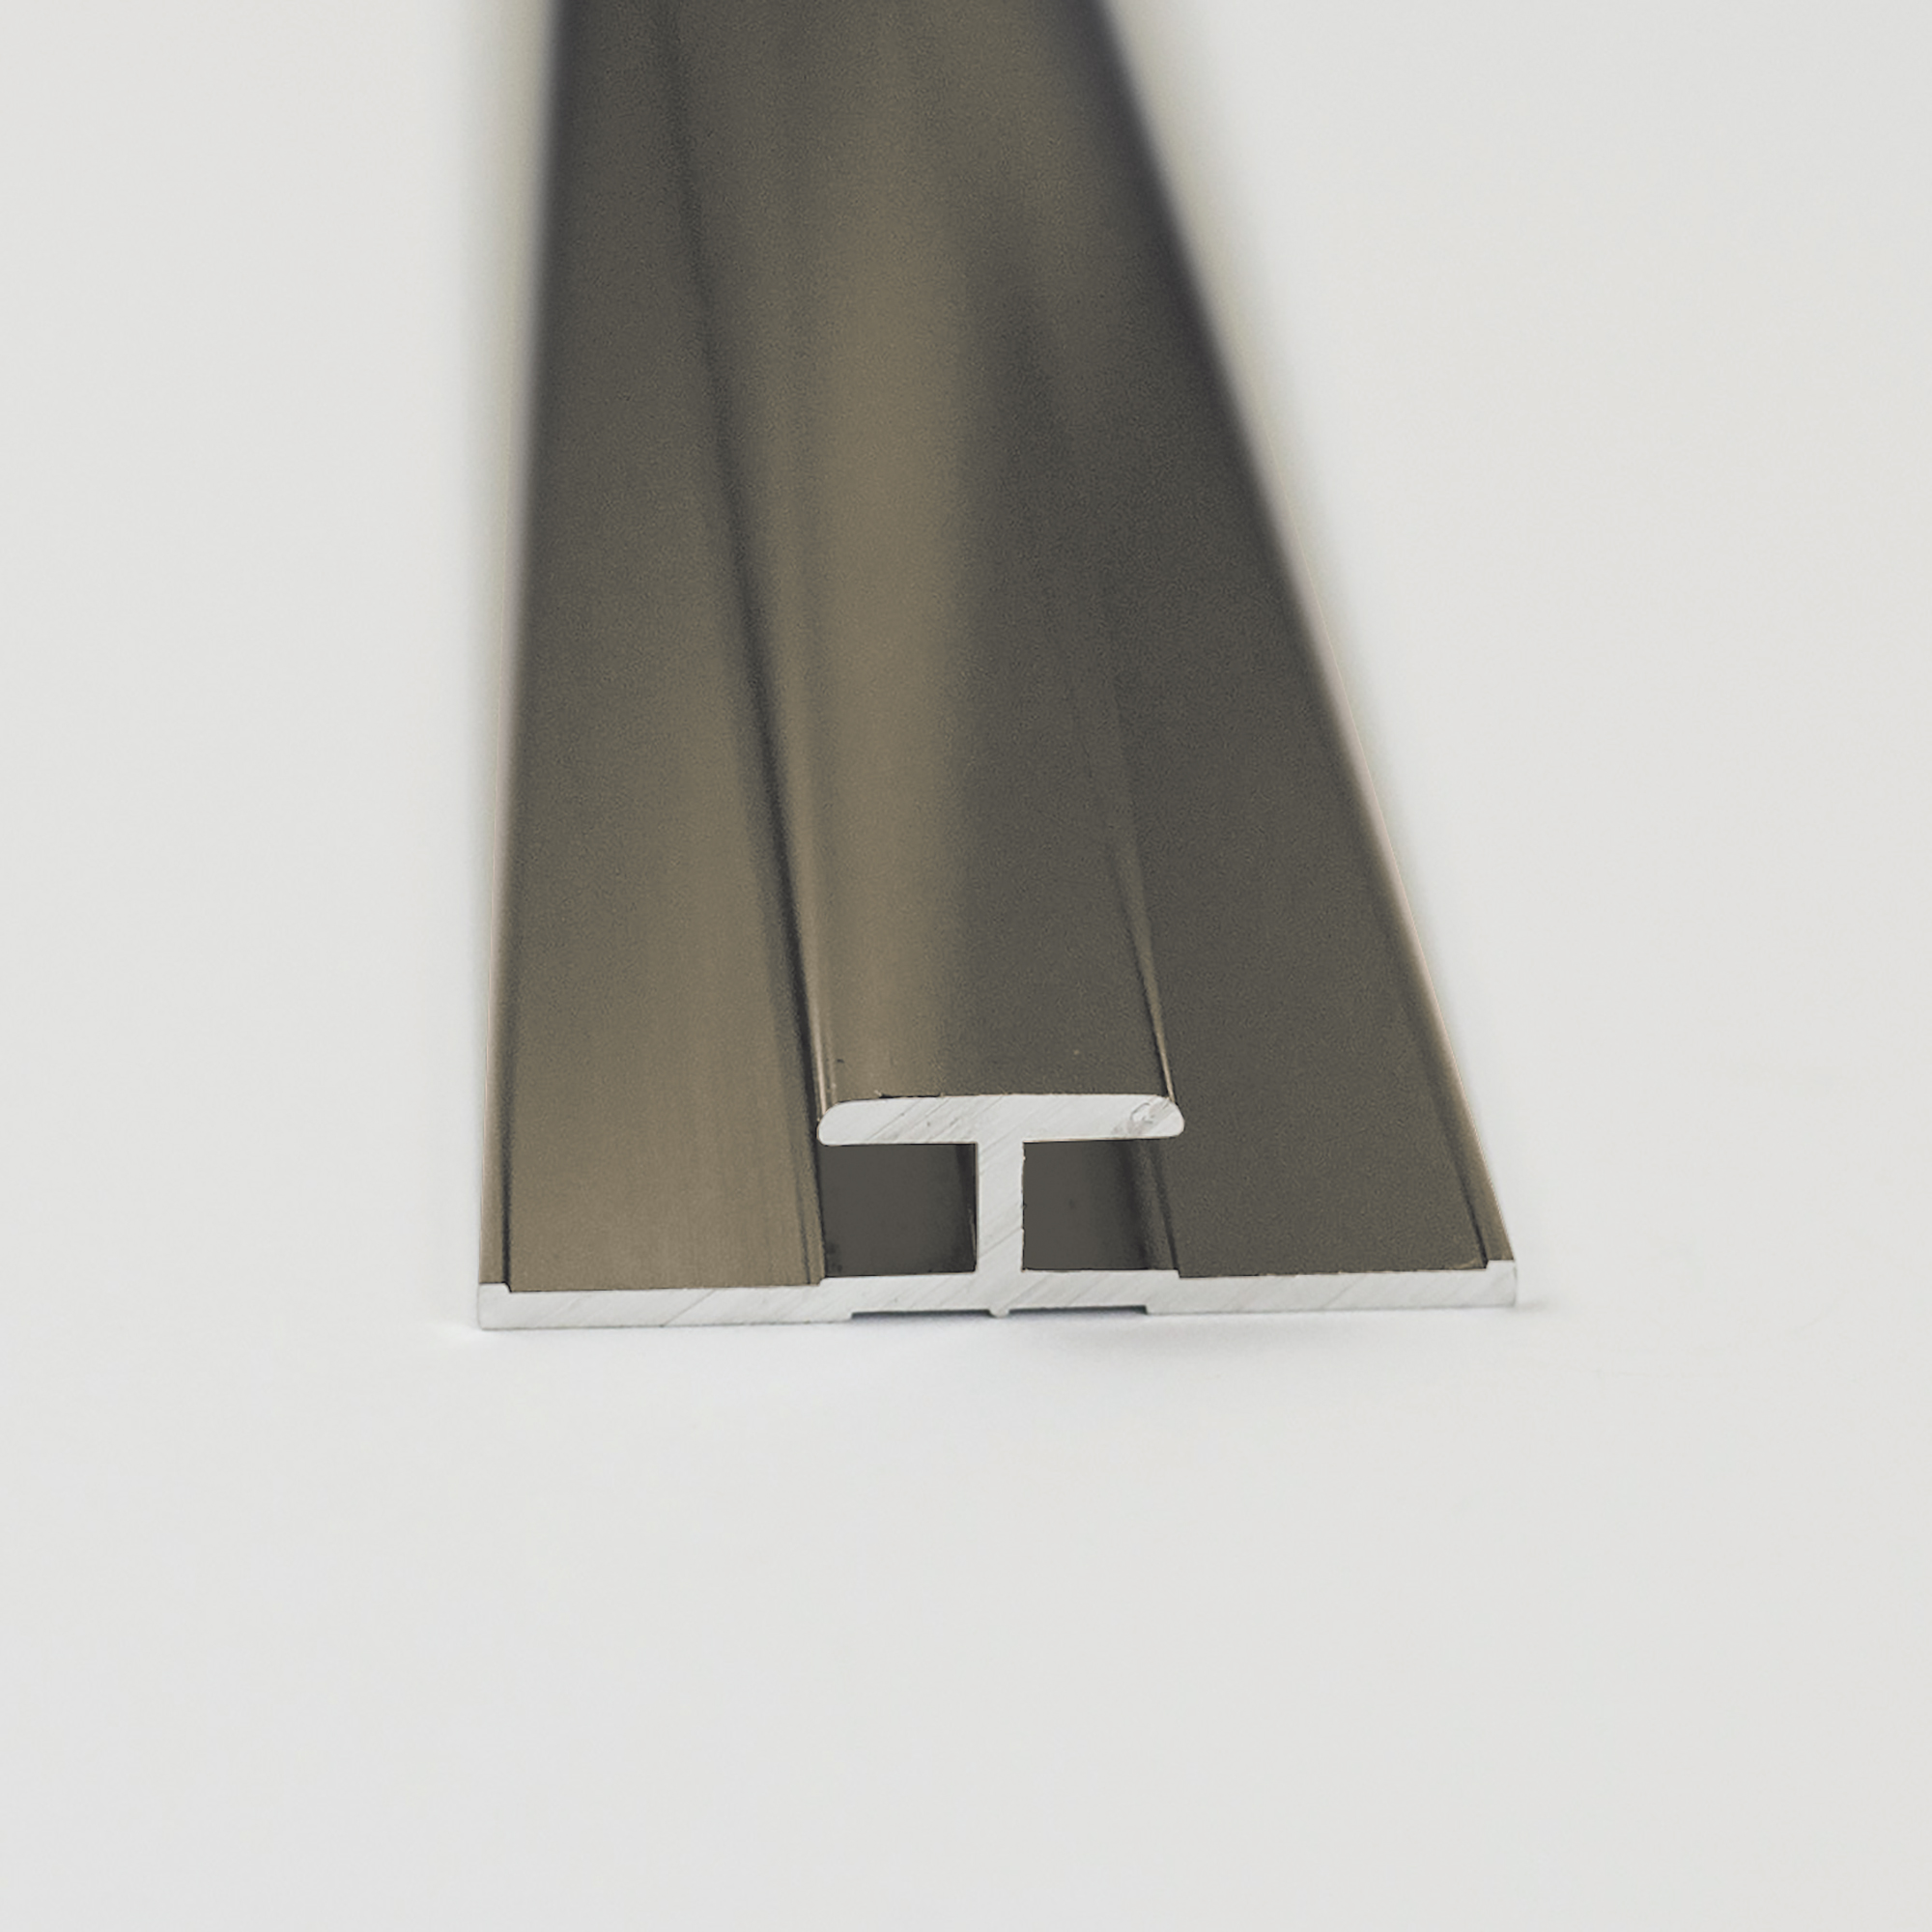 Verbindungsprofil für Rückwandplatten, mokka, 2100 mm + product picture